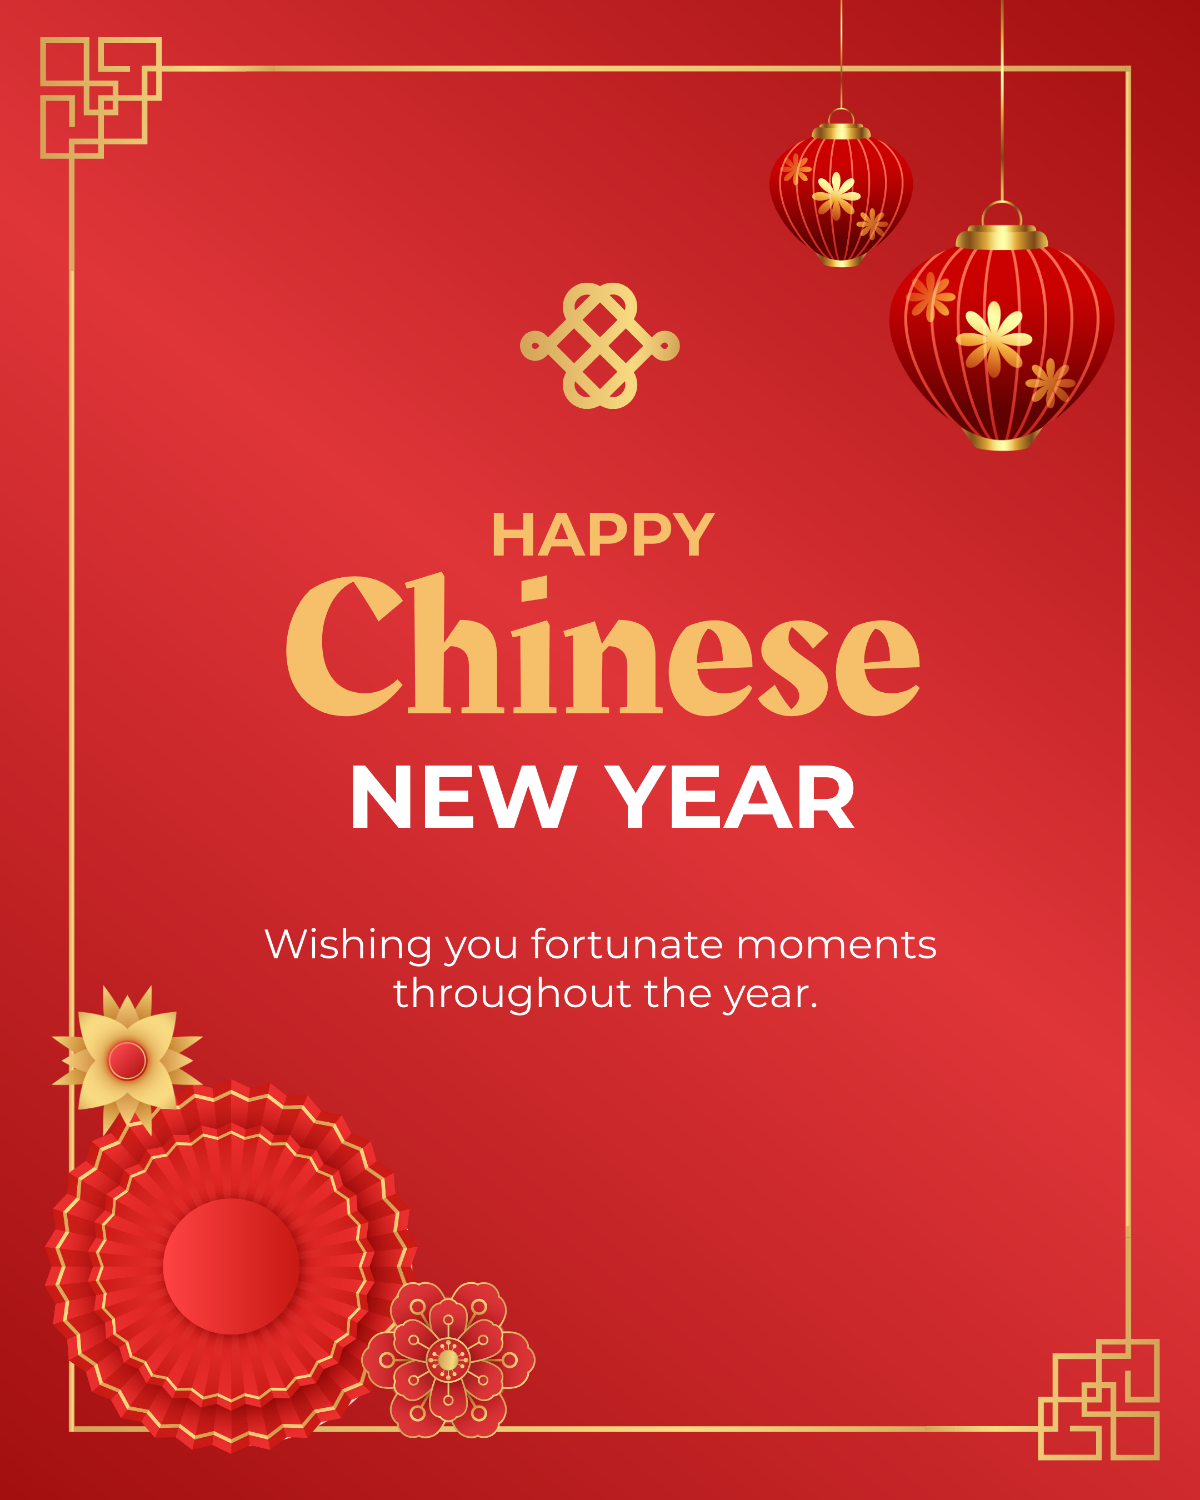 Chinese New Year Greetings Whatsapp Template